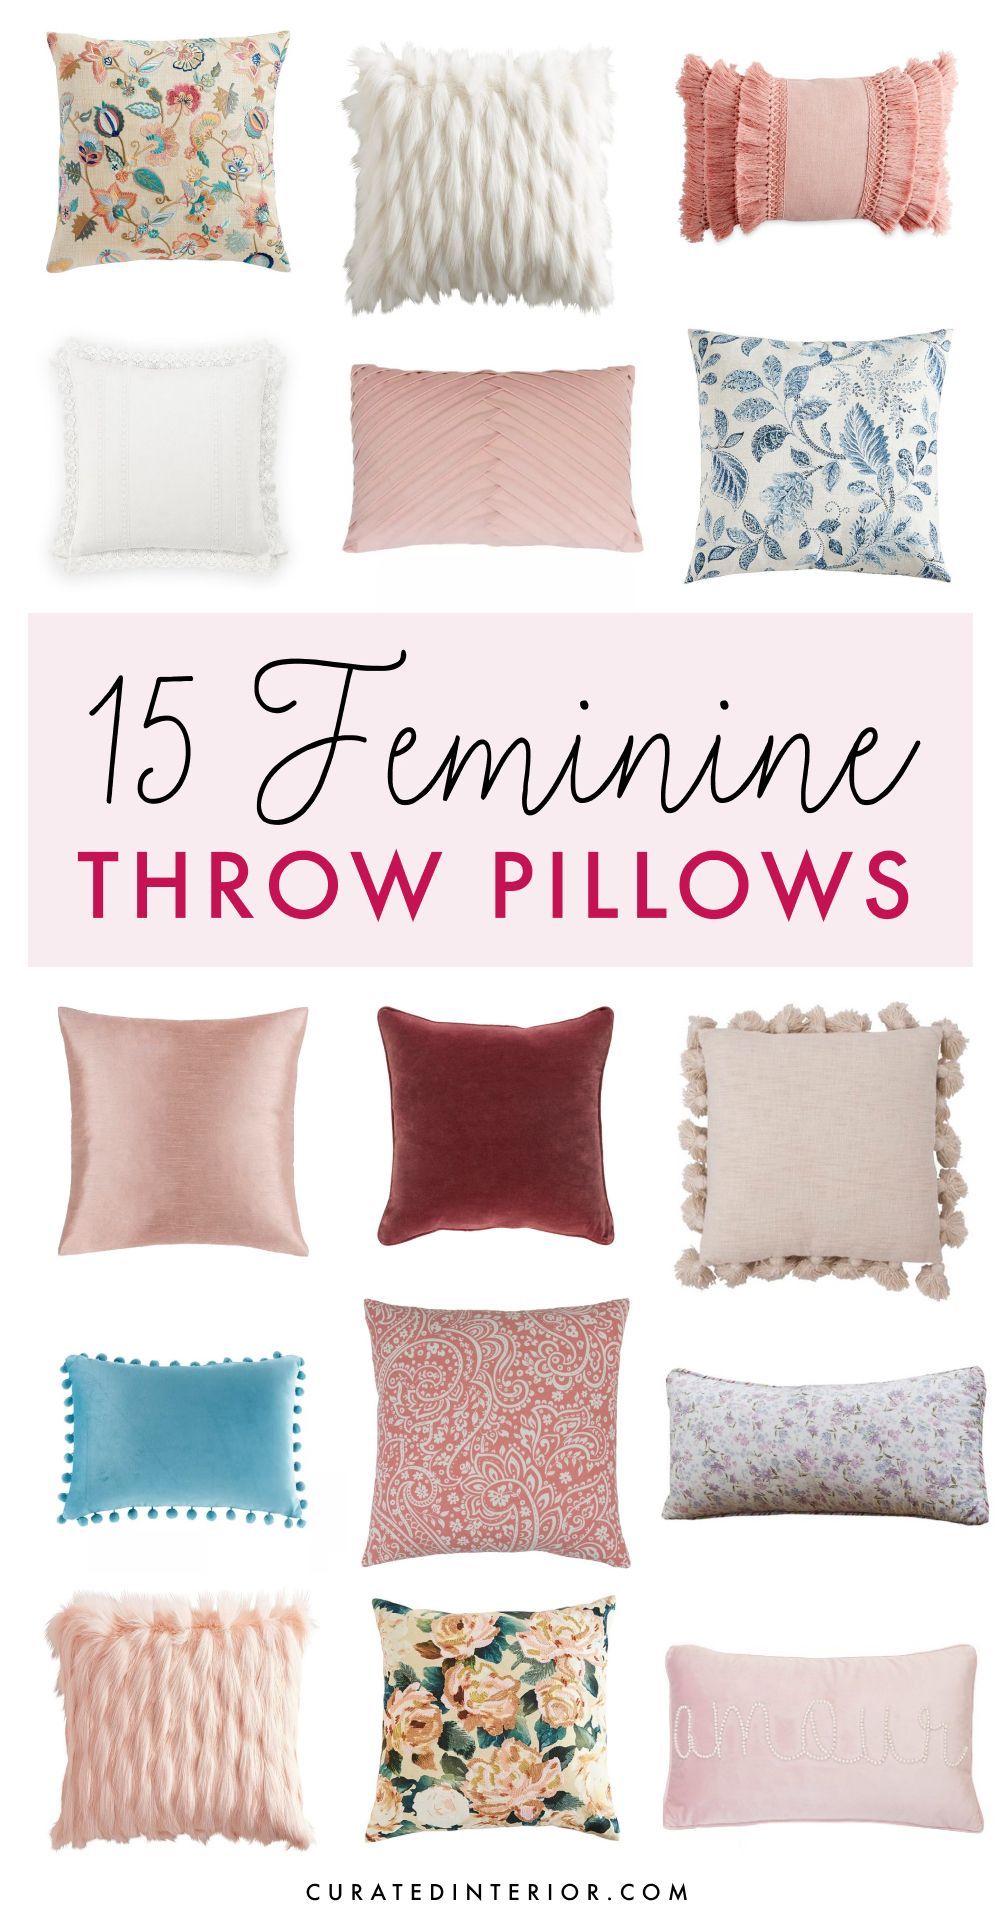 15 Chic, Feminine Throw Pillows for the Living Room or Bedroom! #femininedecor